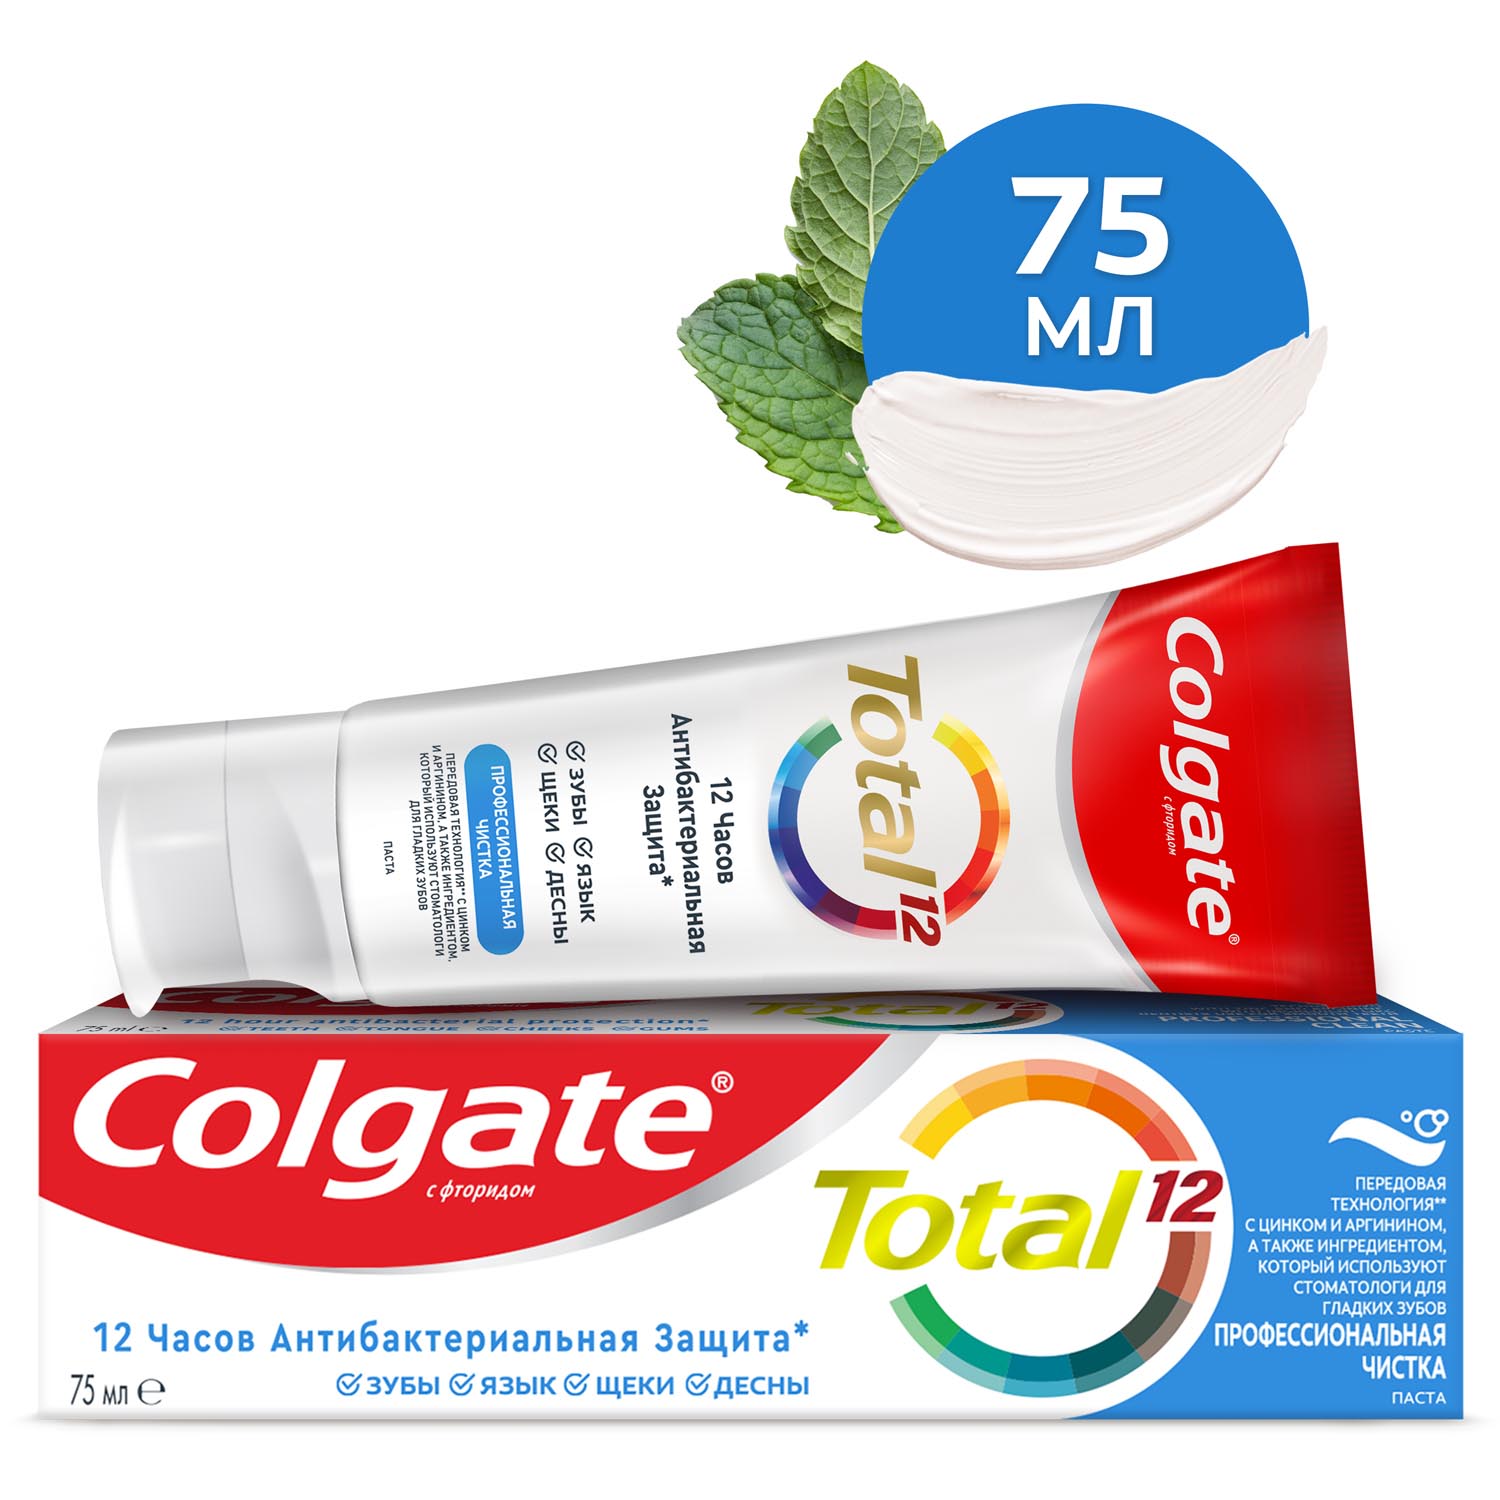 Зубная паста Colgate Total 12 Профессиональная Чистка с специальным ингредиентом для гладких и блестящих зубов, а также с цинком и аргинином для антибактериальной защиты всей полости рта в течение 12 часов, 75 мл зубная щетка colgate 360 суперчистота всей полости рта